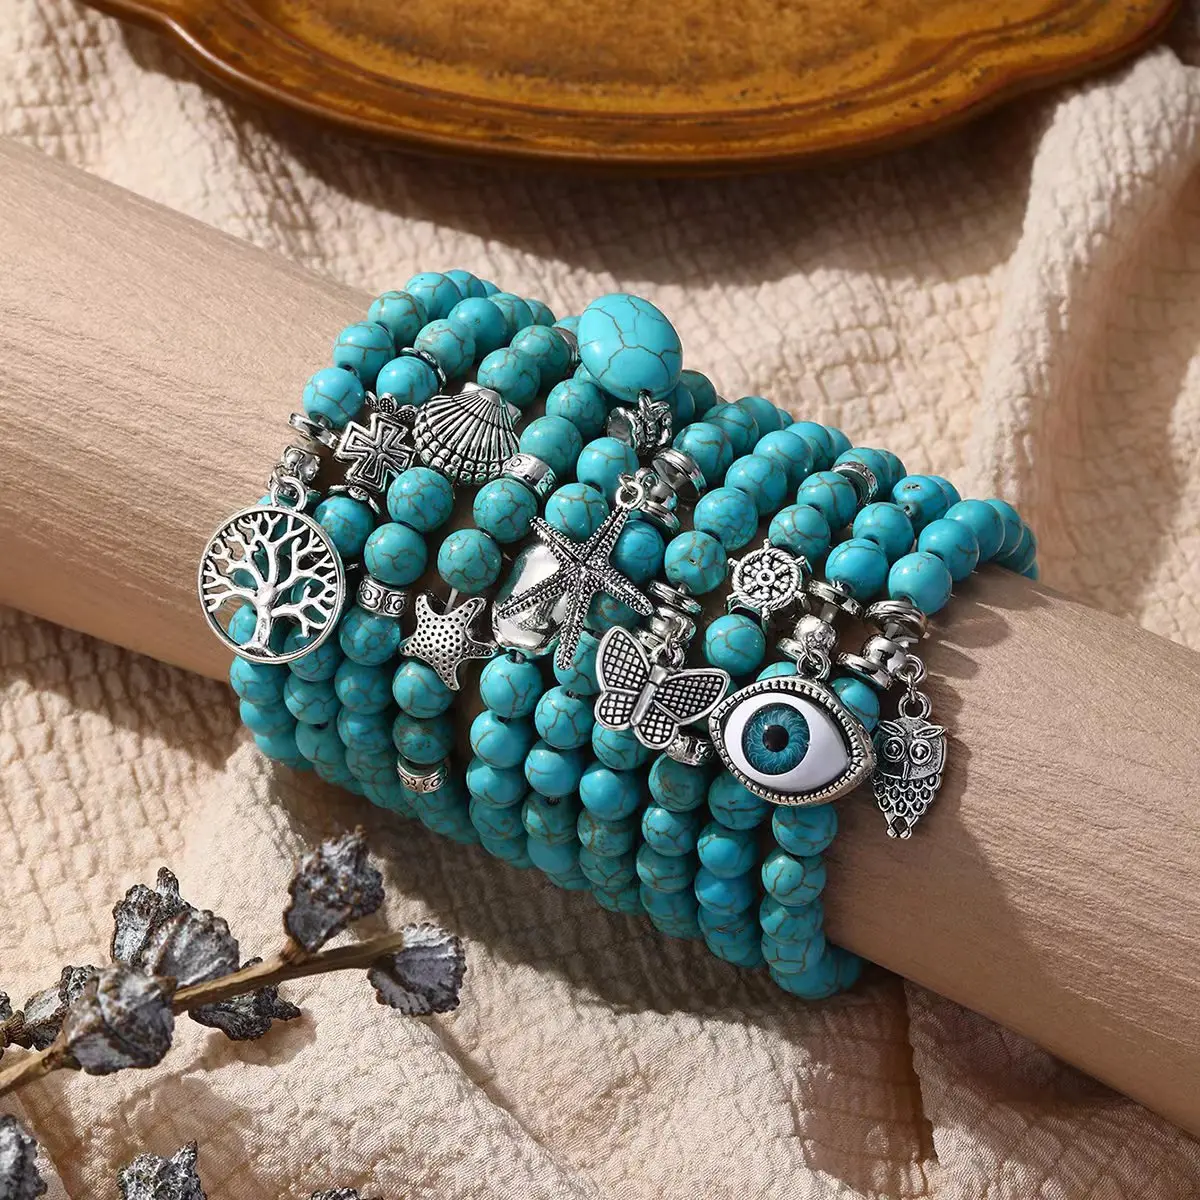 Nieuwe Trendy Bohemian Turquoise Armband Armband Natuursteen Kralen Armband Met Vlinderschildpad Leven Boom Kruis Bedels